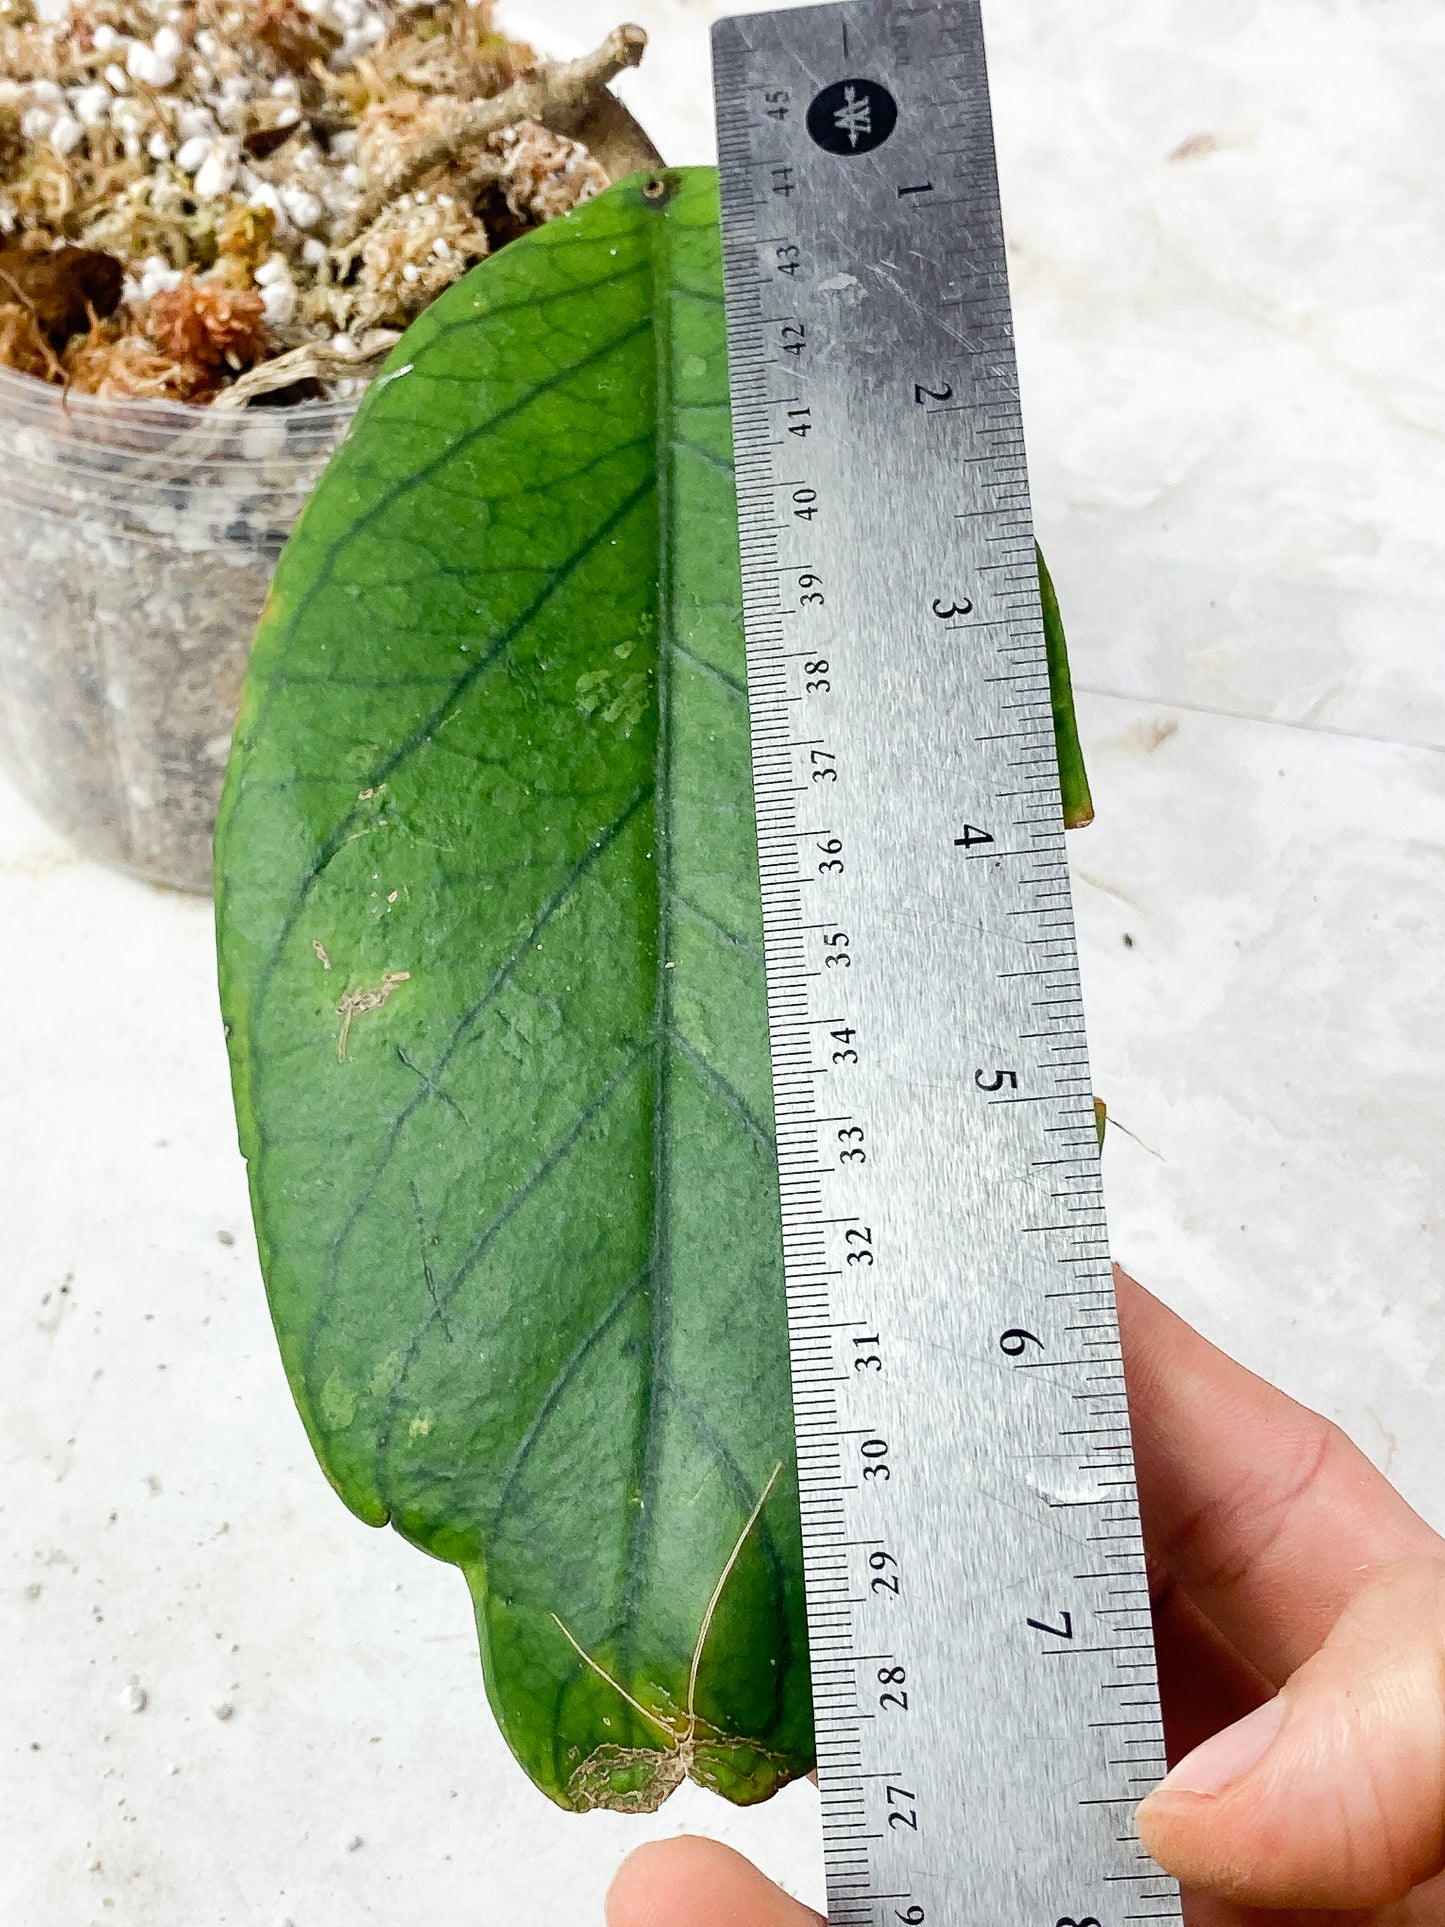 Hoya Tanggamus Slightly Rooted 1 big leaf